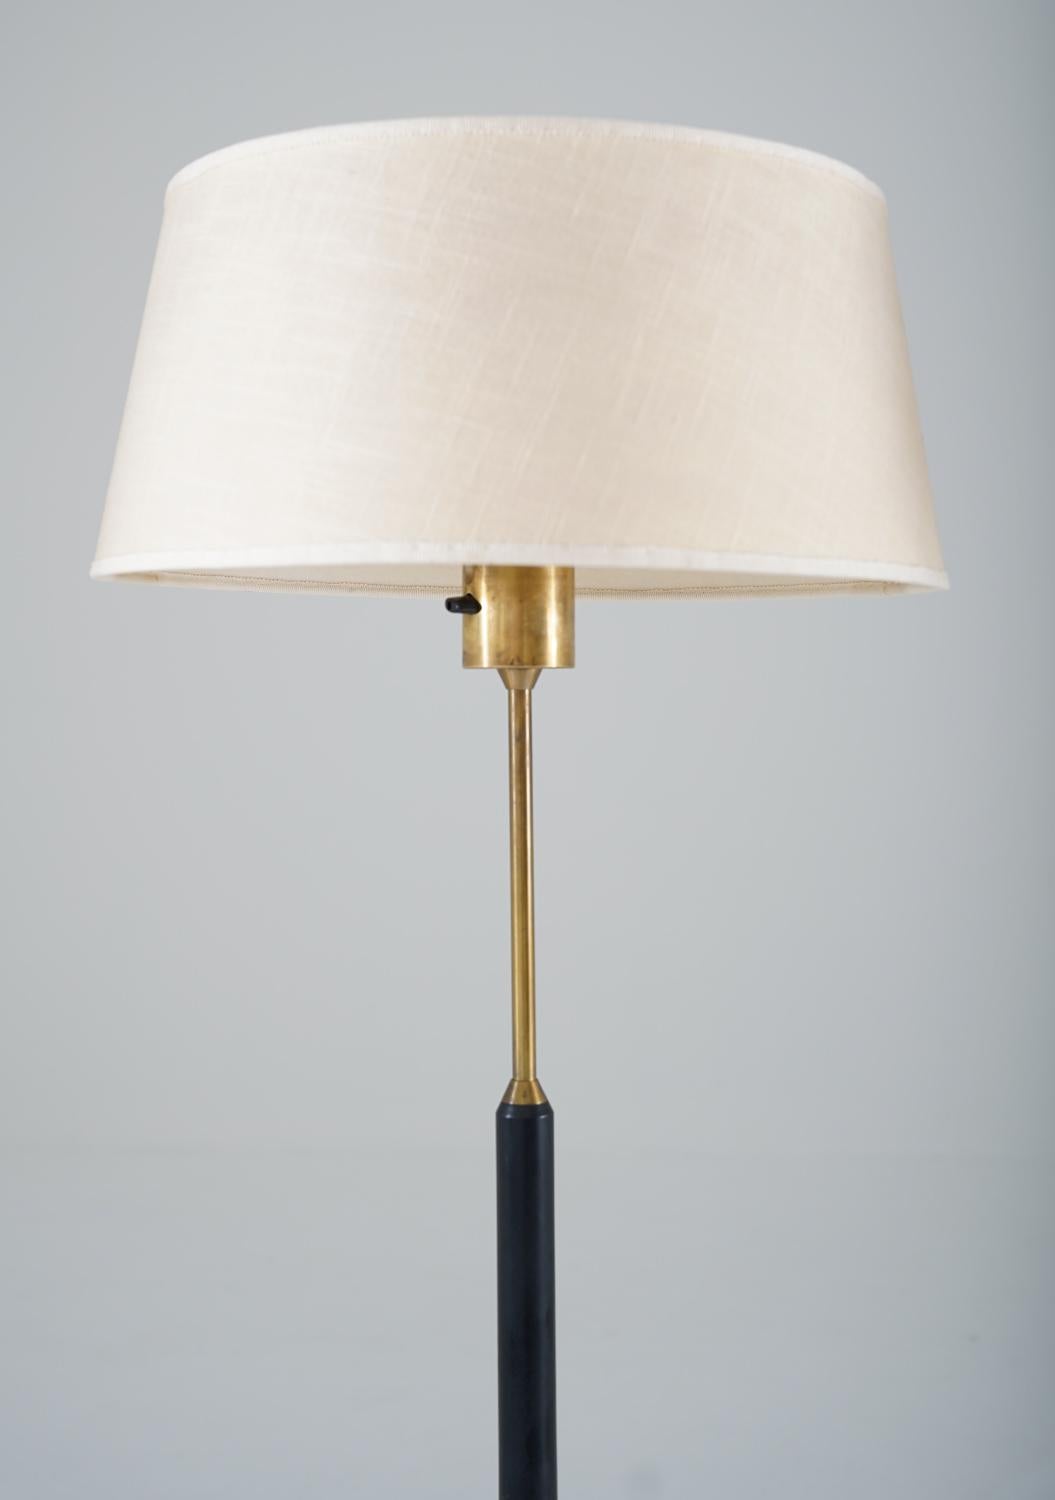 Scandinavian Modern Scandinavian Midcentury Floor Lamps in Brass and Wood by Bergboms, Sweden